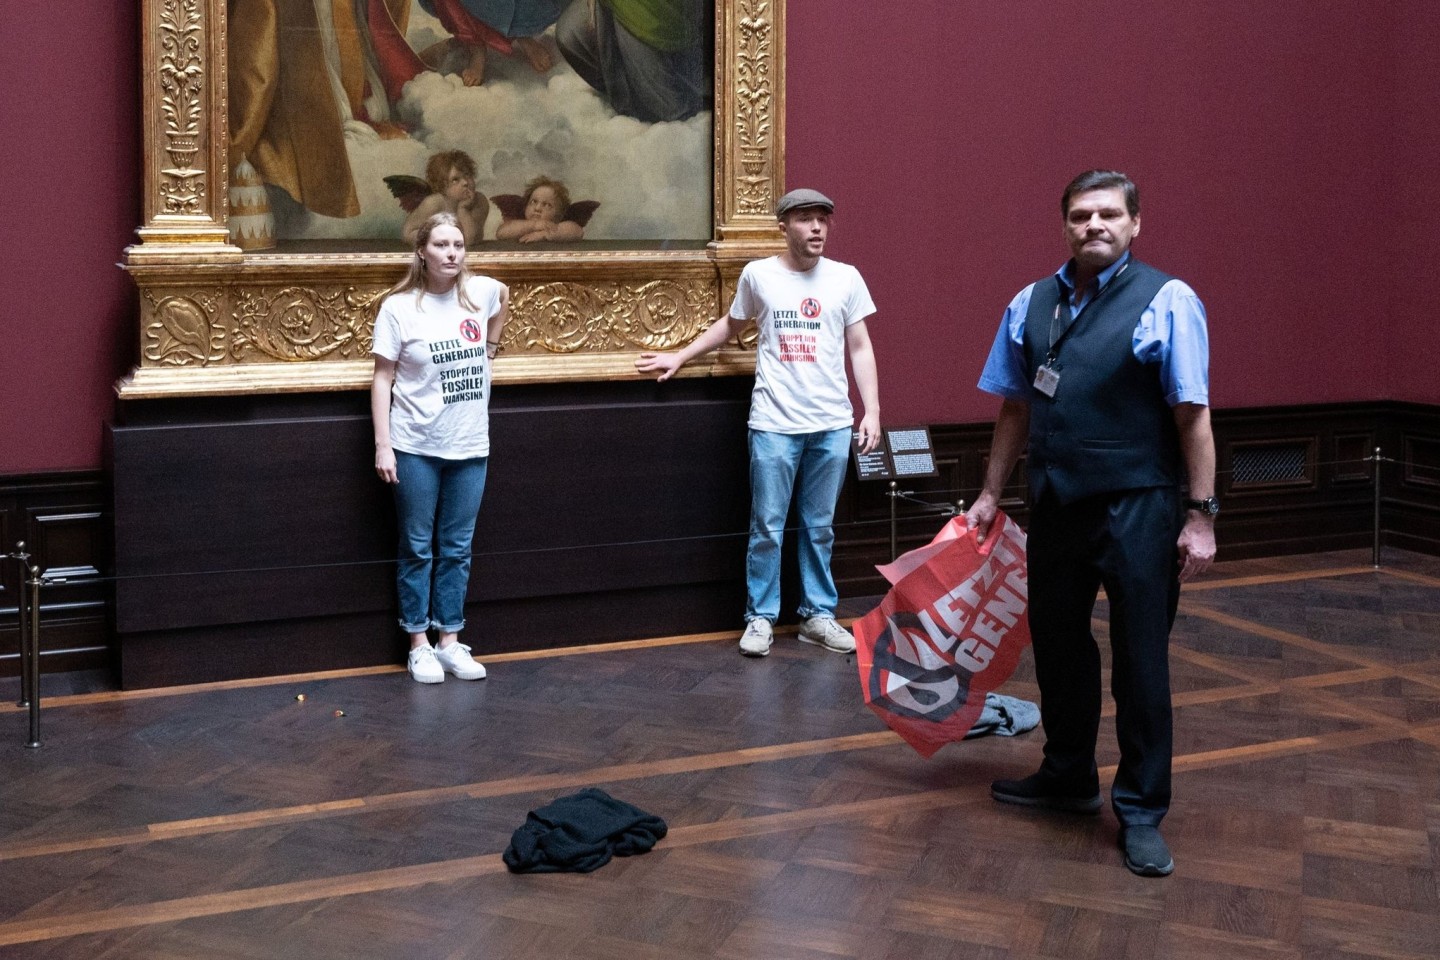 Zwei Umweltaktivisten der Gruppe «Letzte Generation» stehen in der Gemäldegalerie Alte Meister am Gemälde «Sixtinische Madonna» von Raffael.